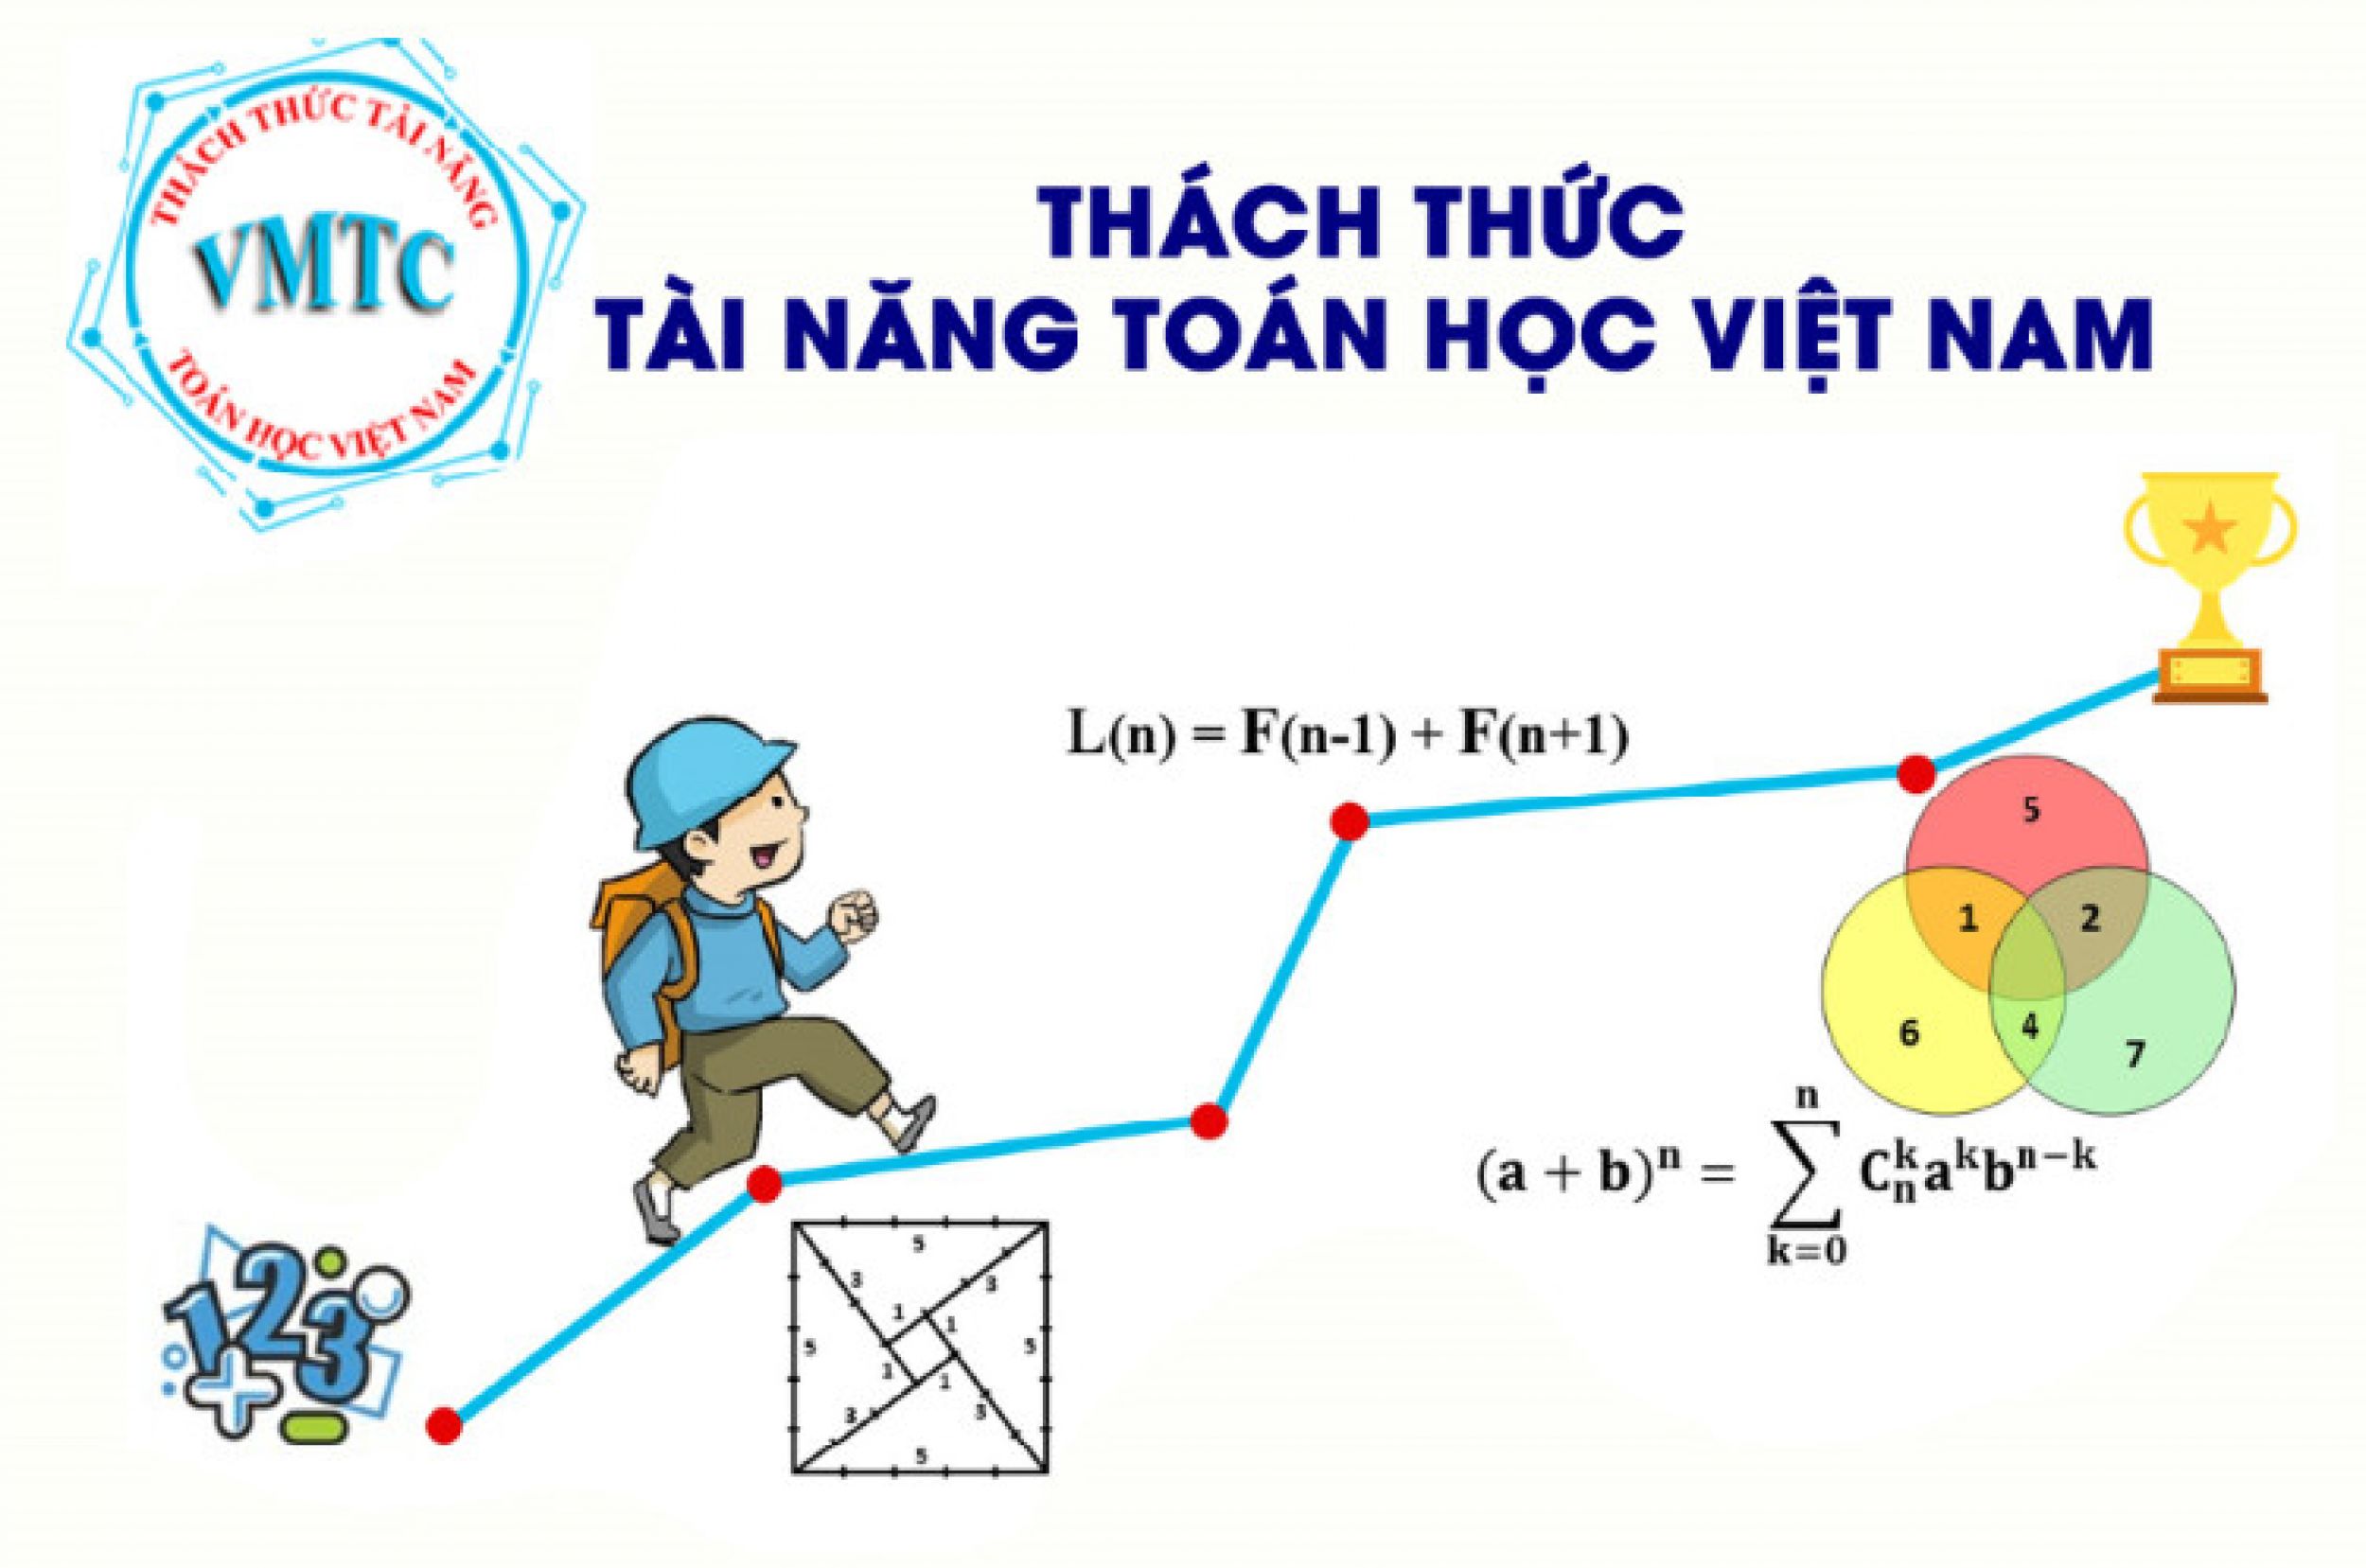 Đồng hồ theo phong cách Toán học  Toán Học Việt Nam